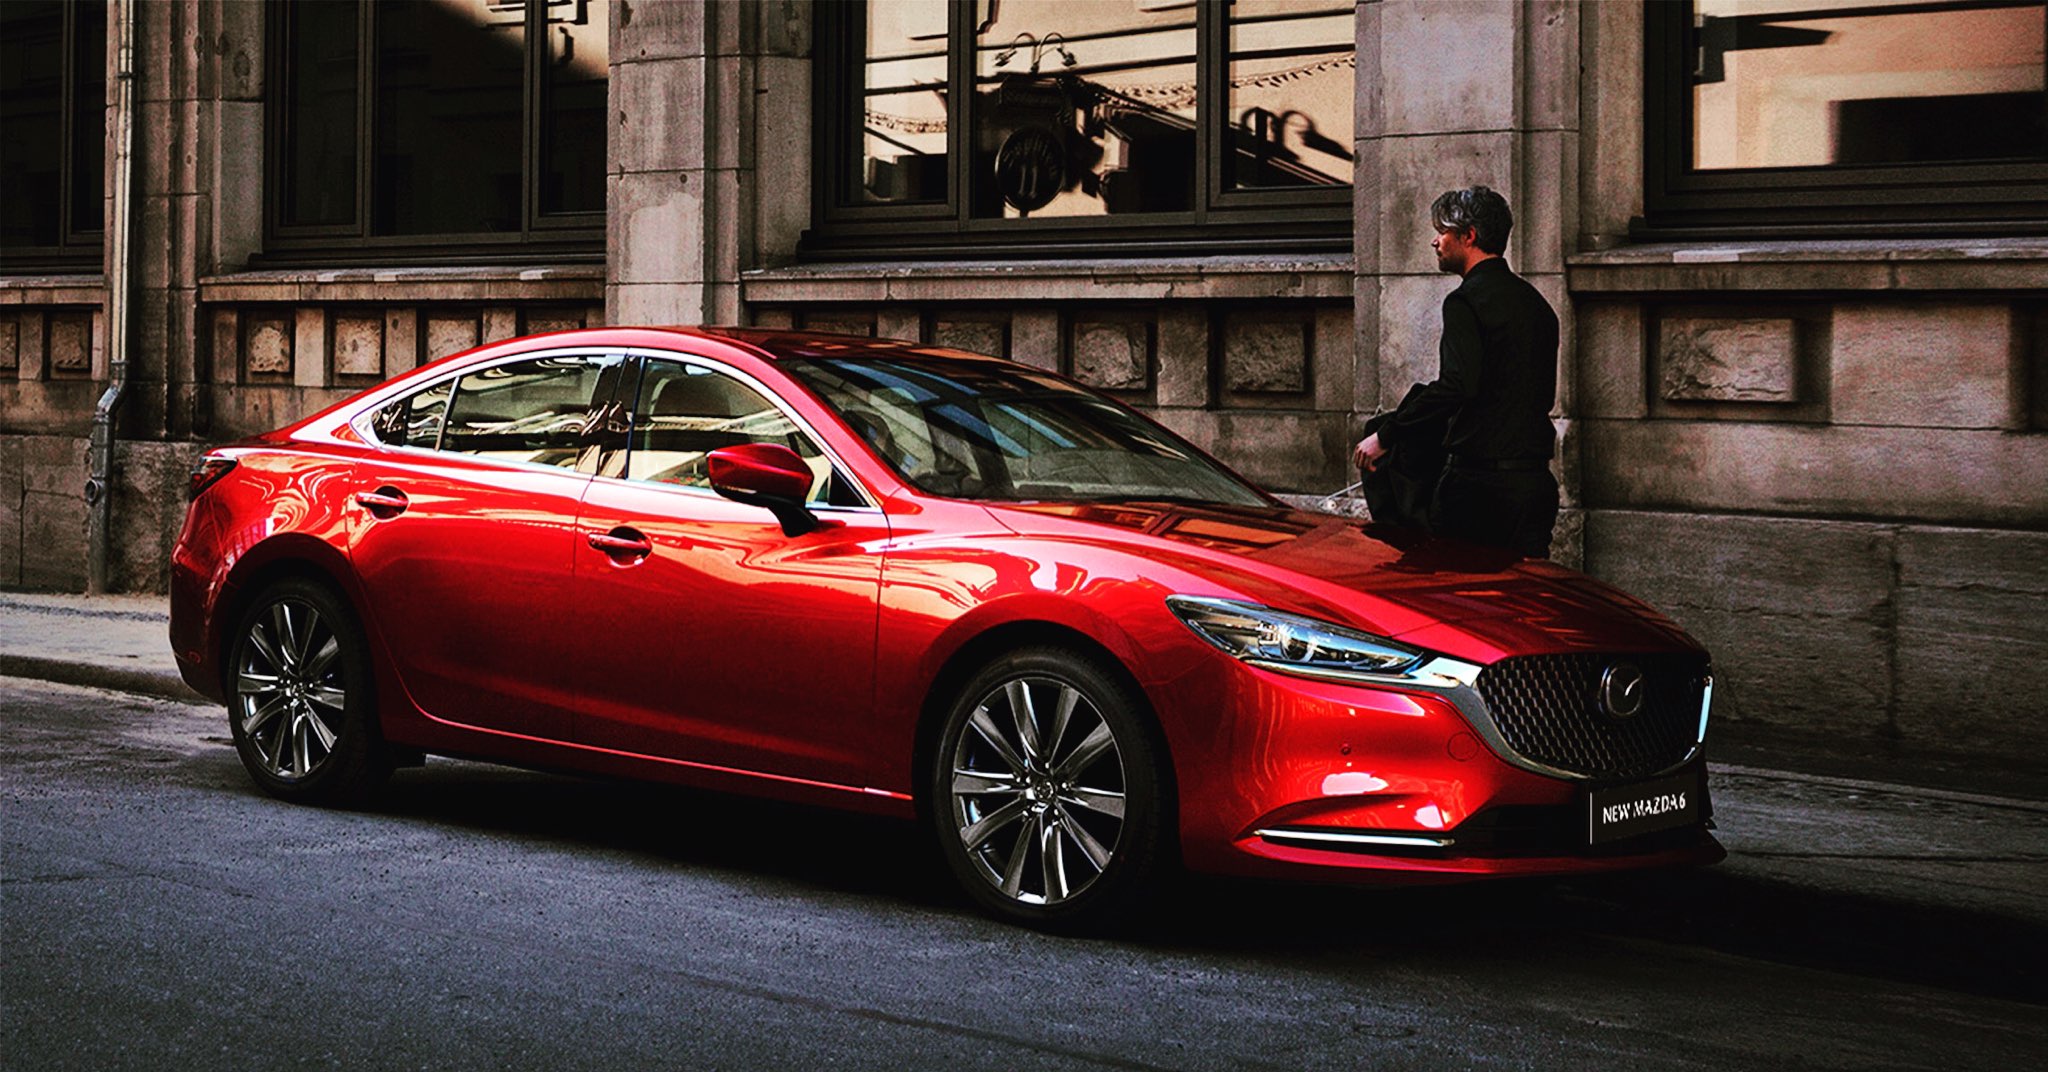 Mazda6 - lựa chọn sáng giá ở tầm 900 triệu đồng | Mazda Long Biên